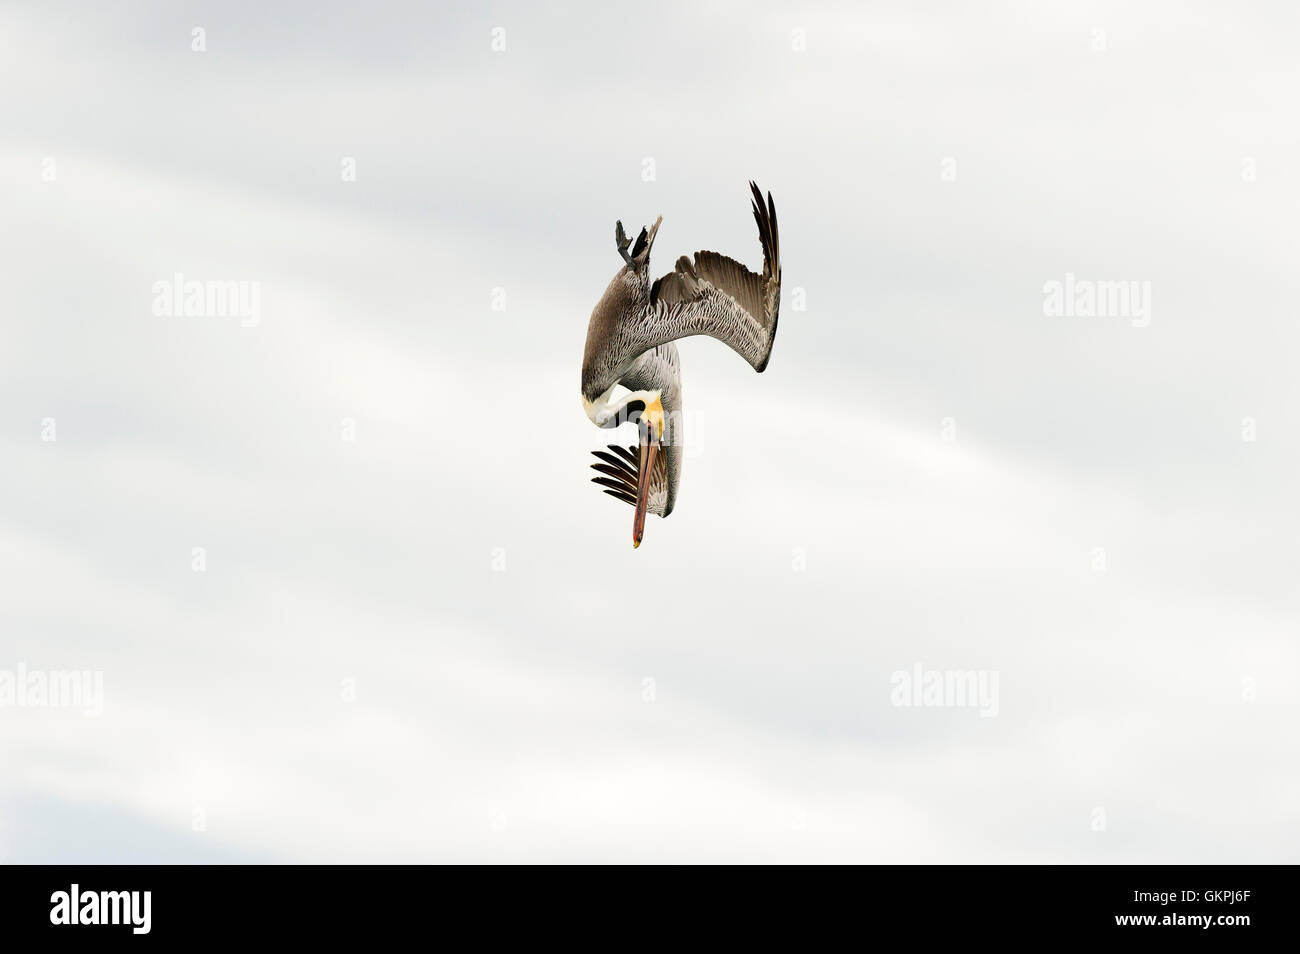 Uccelli in volo è un grande uccello catturato graziosamente metà dive come egli appare sospeso in una metà posa dell'aria. Foto Stock